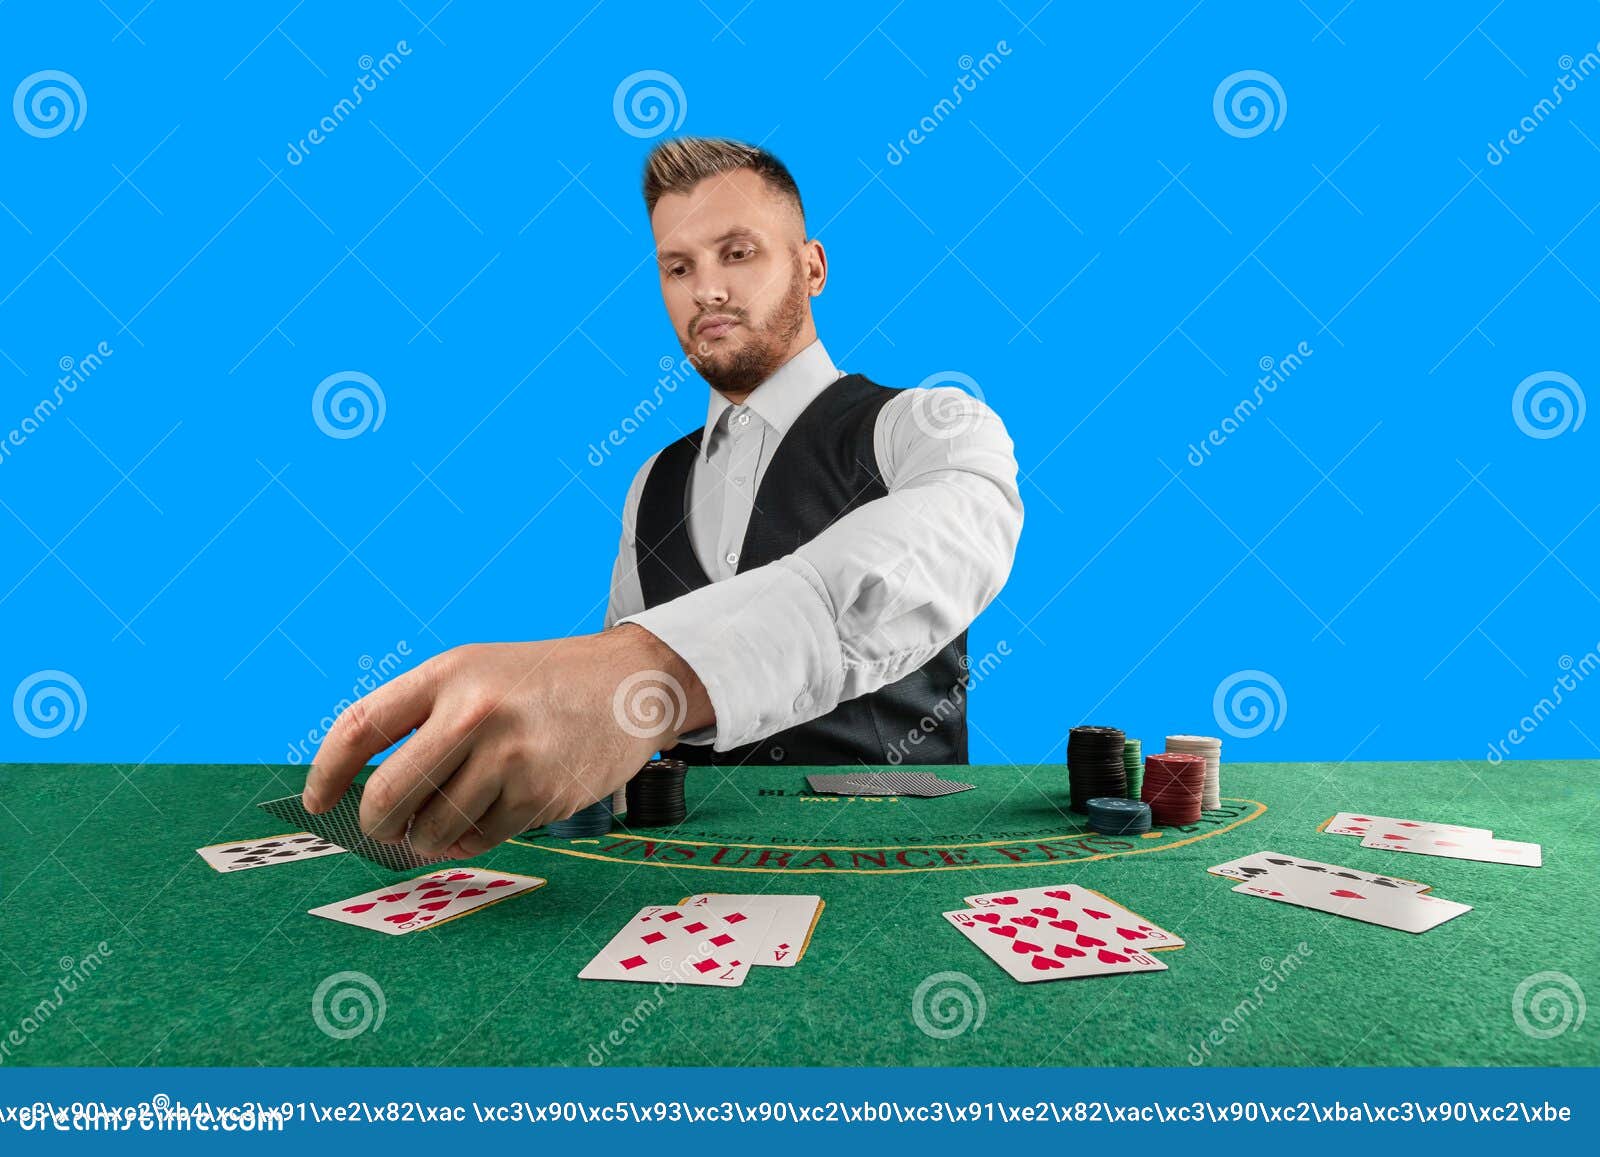 Mesa de pôquer sala de pôquer online ilustração do jogo texas holdem  conceito de jogo online